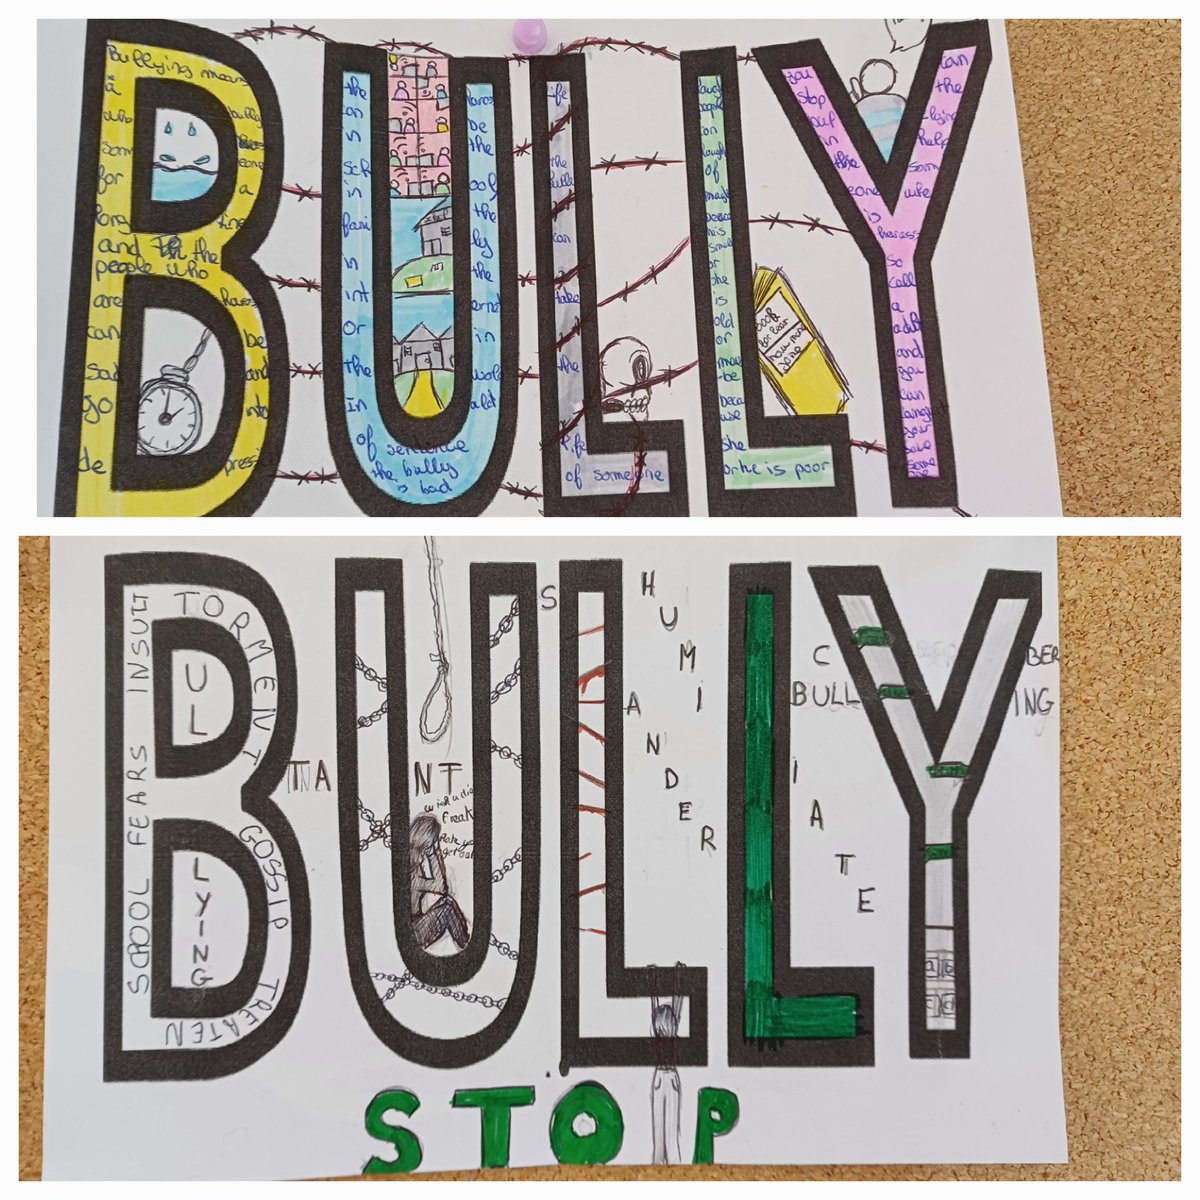 Tous contre le #Harcèlement 🚫
Les élèves du @collegeNeuvic ont donné leur interprétation de ce que signifie #Bully (harceler/ harceleur) 👏💪
#NoBullying